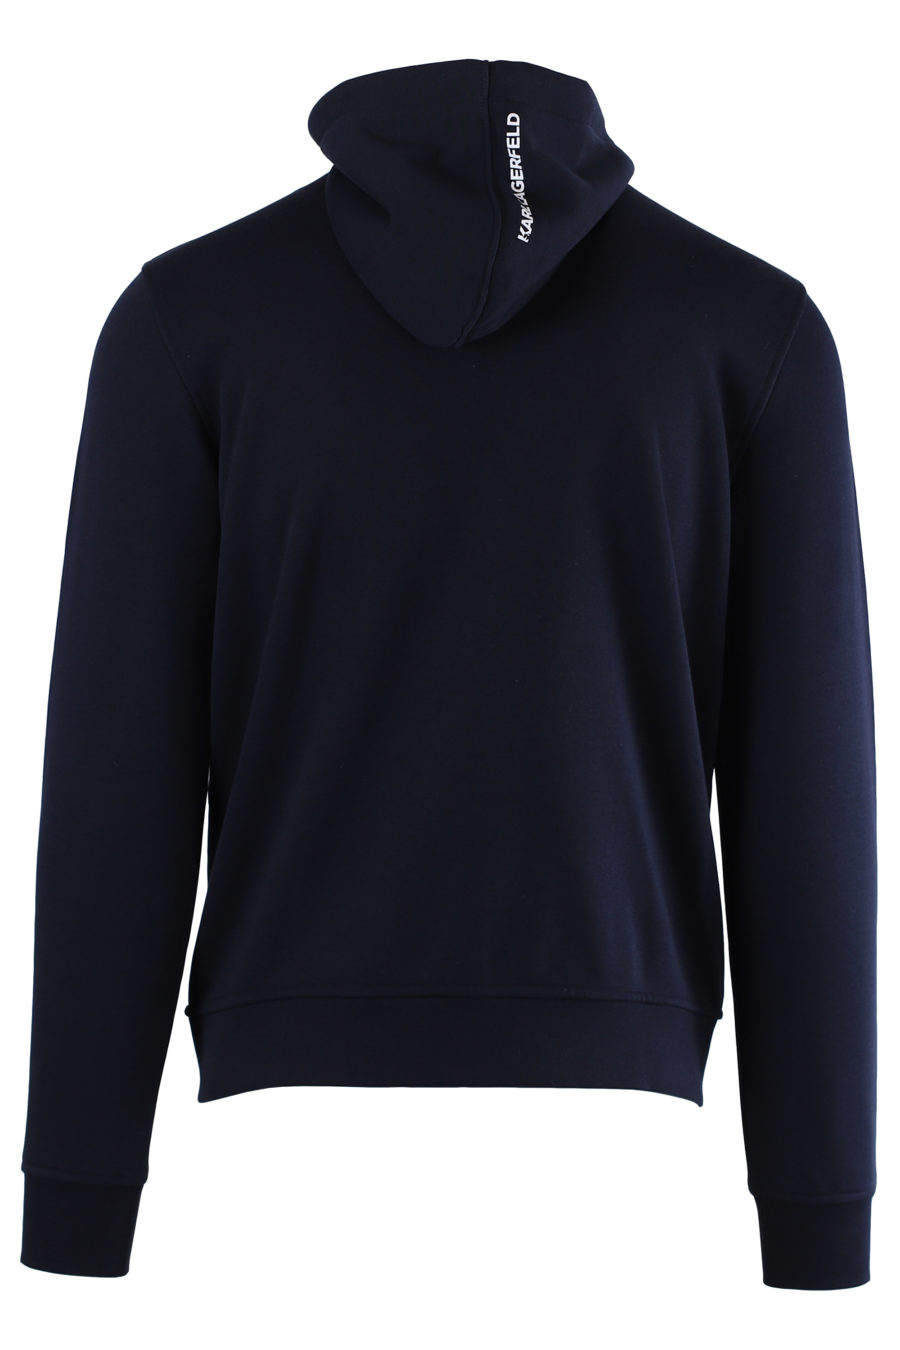 Blue sweatshirt with zip - IMG 0540